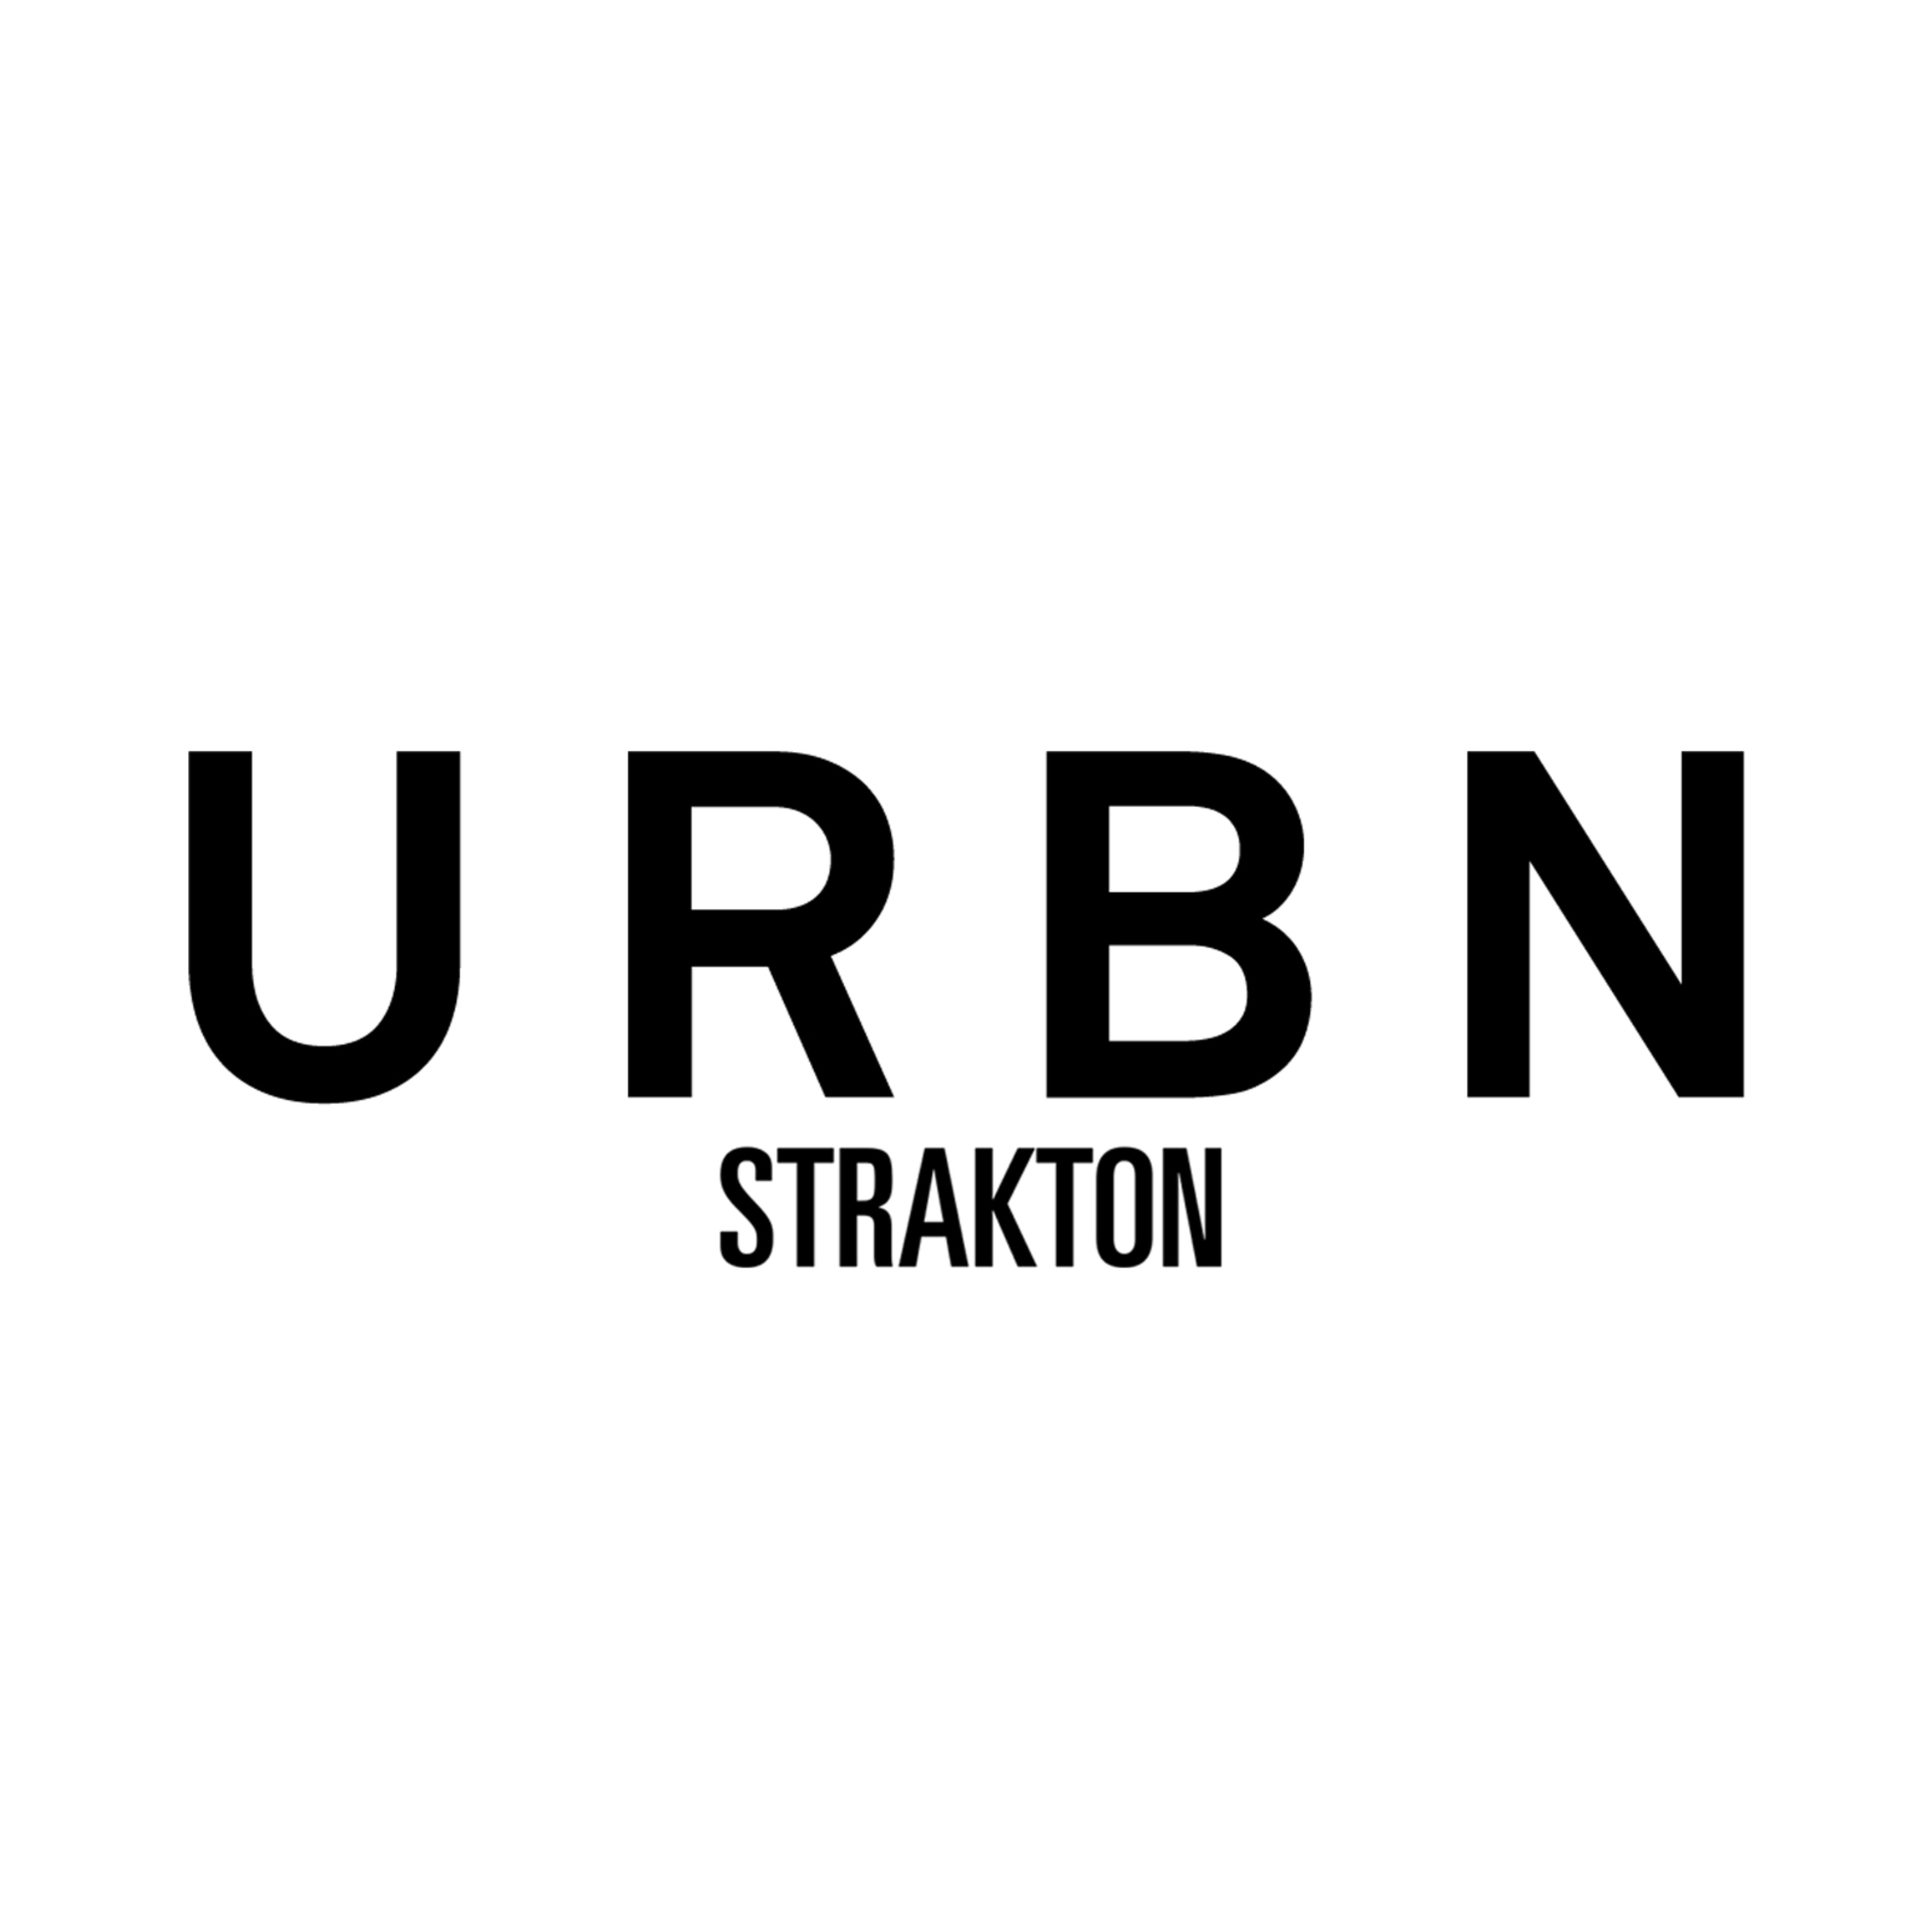 Strakton Urbn